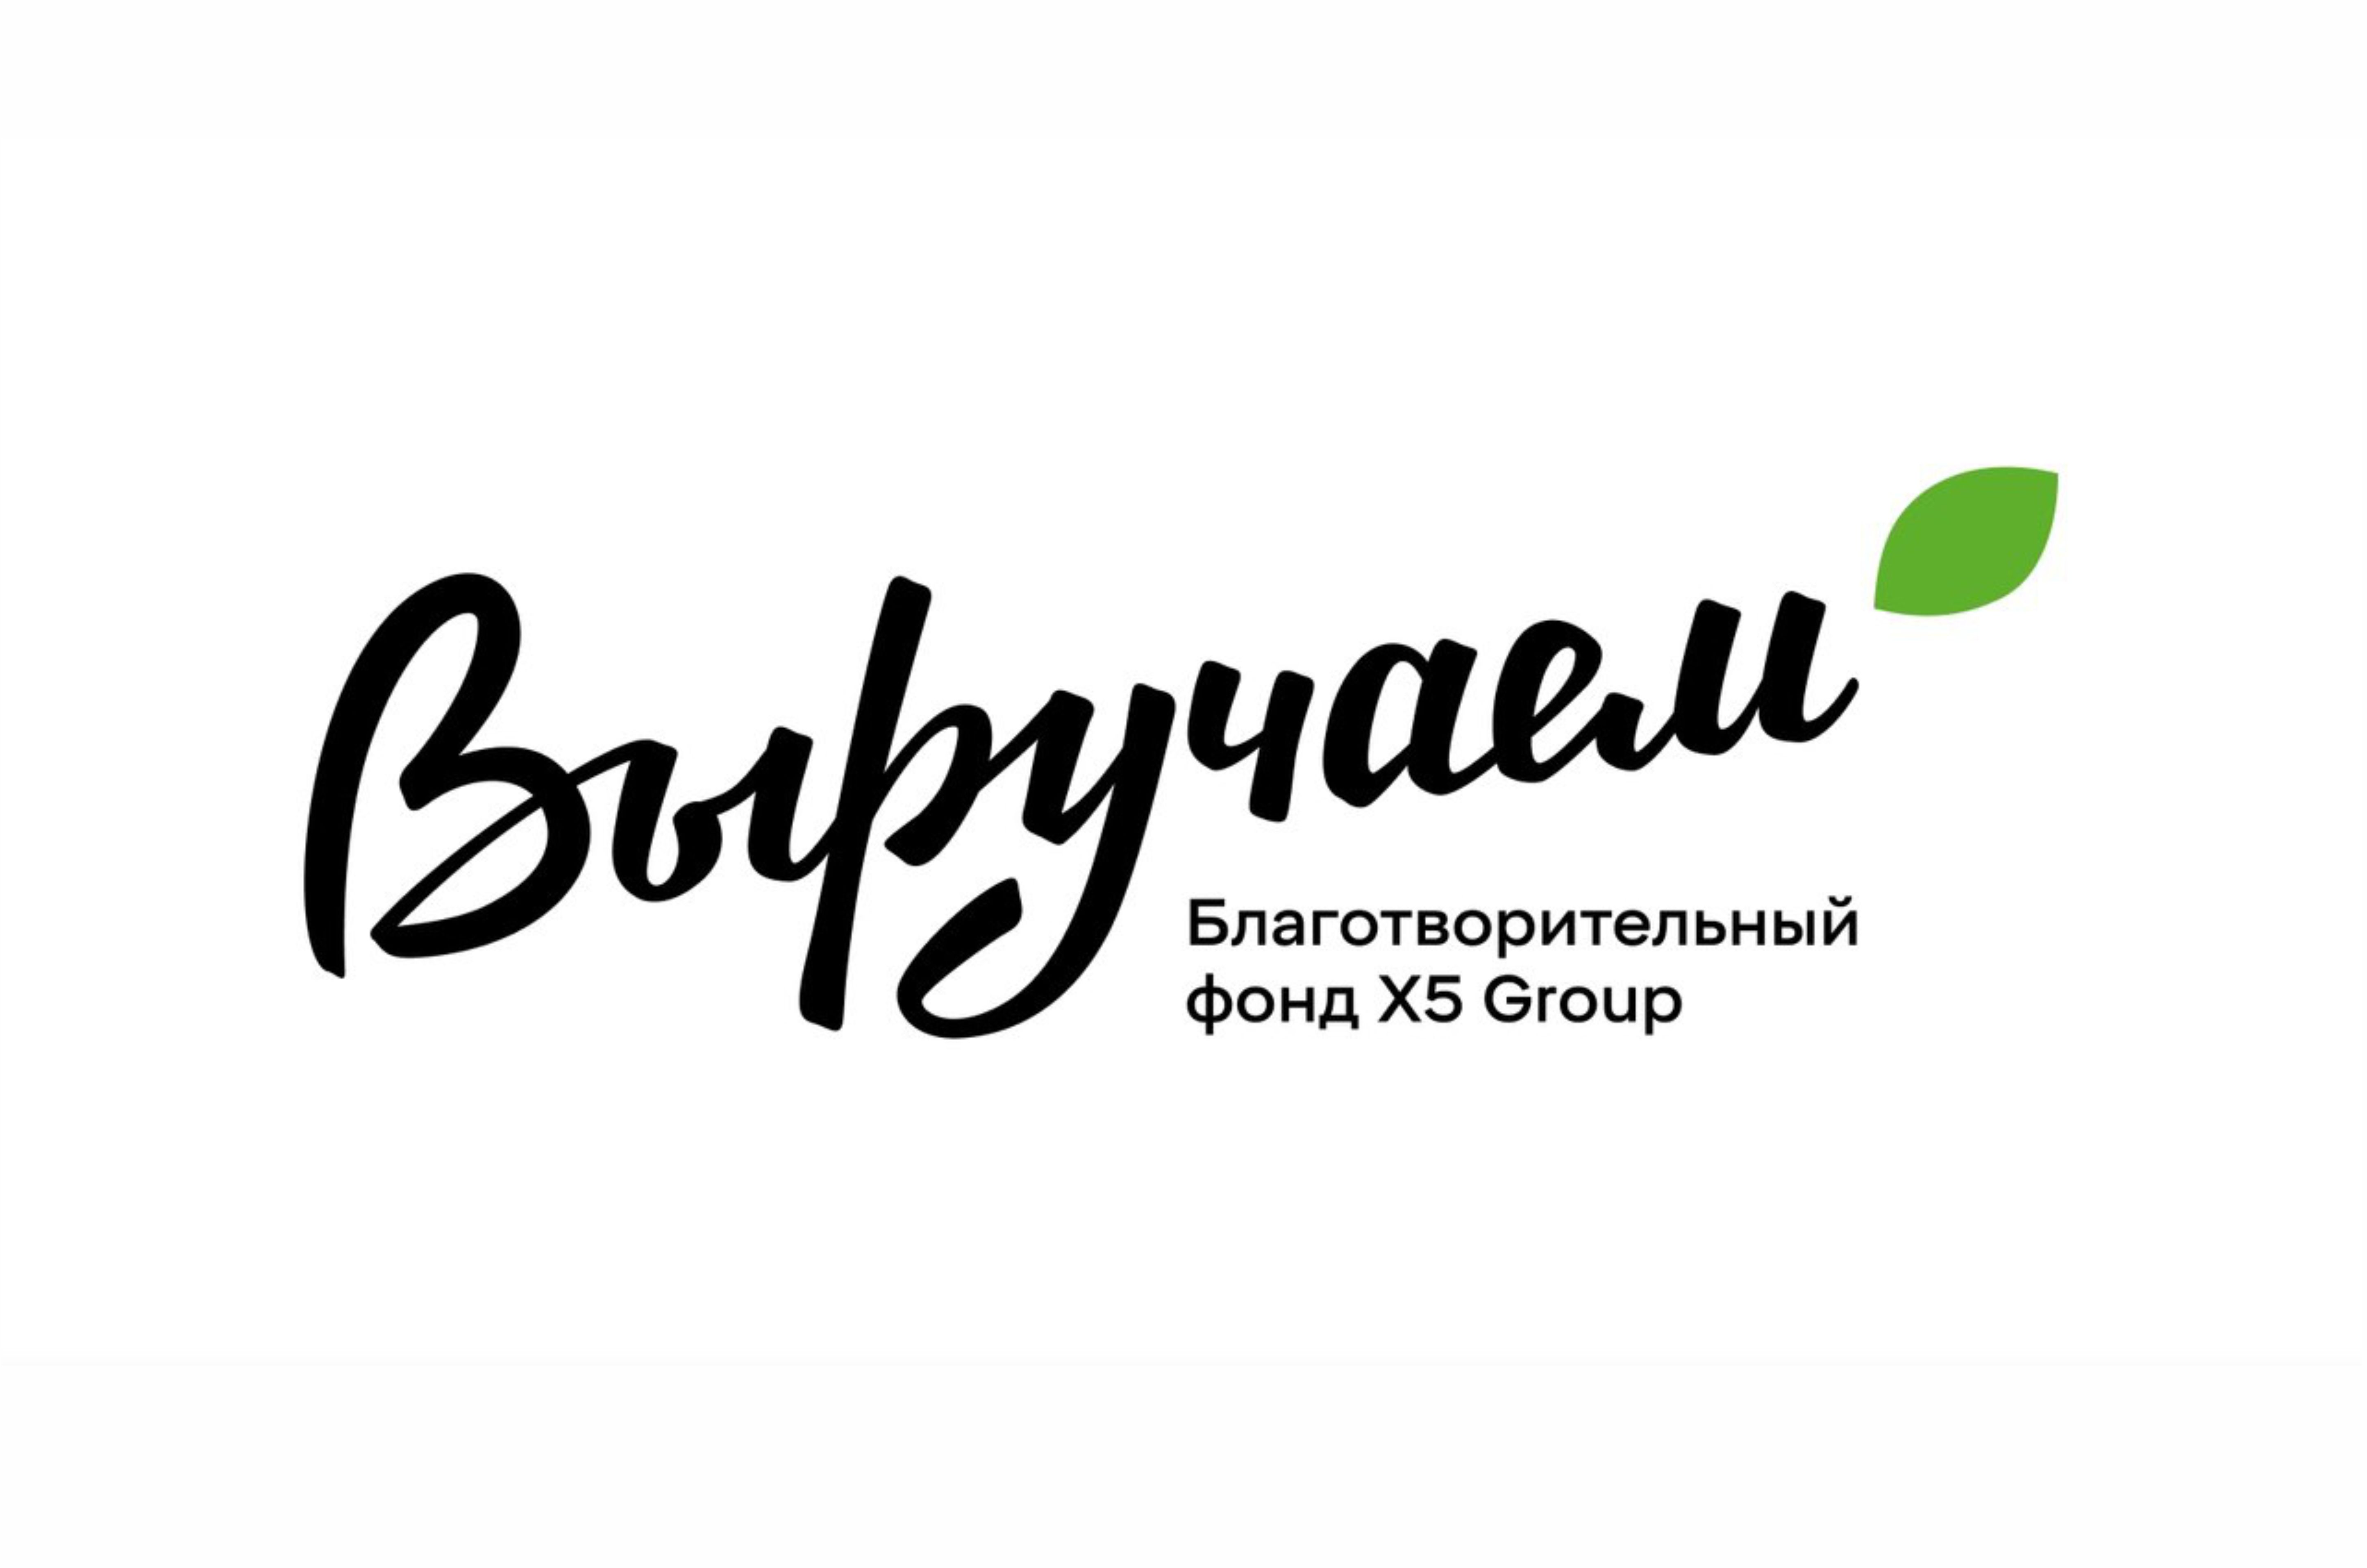 Компания X5 Group объявила о новом грантовом конкурсе